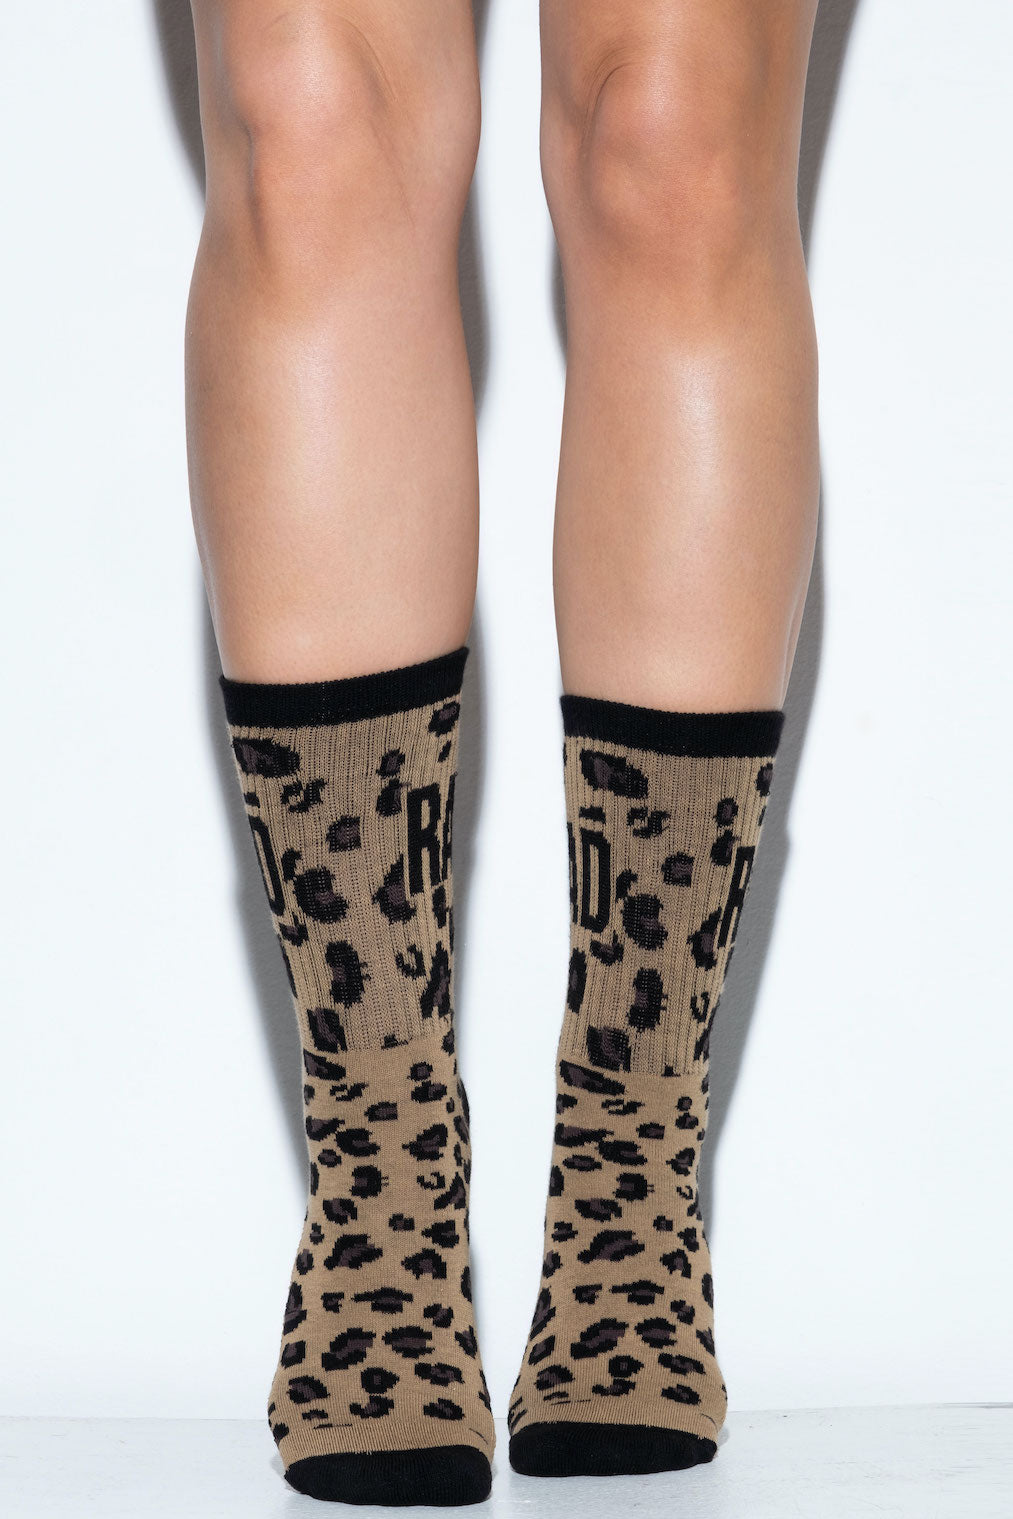 RAD Socks - Leopard